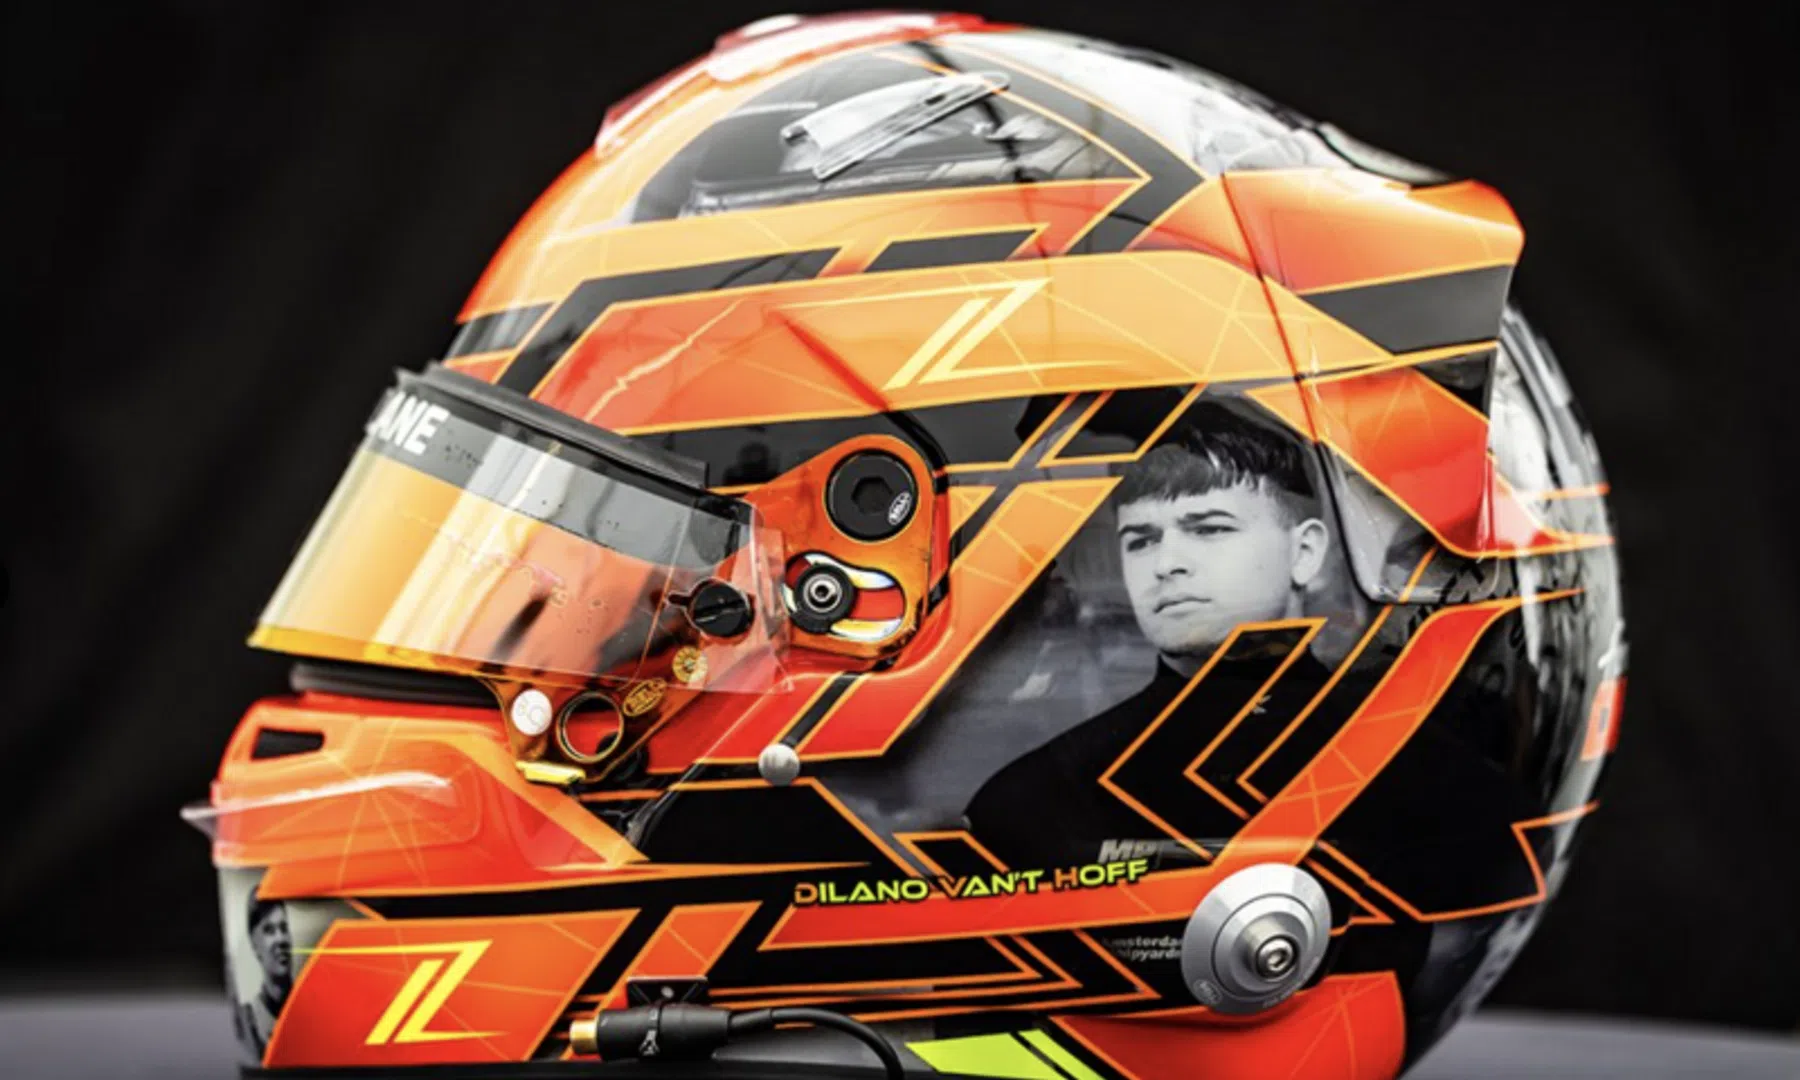 Tribute to Van 't Hoff: teammate rides with special helmet design